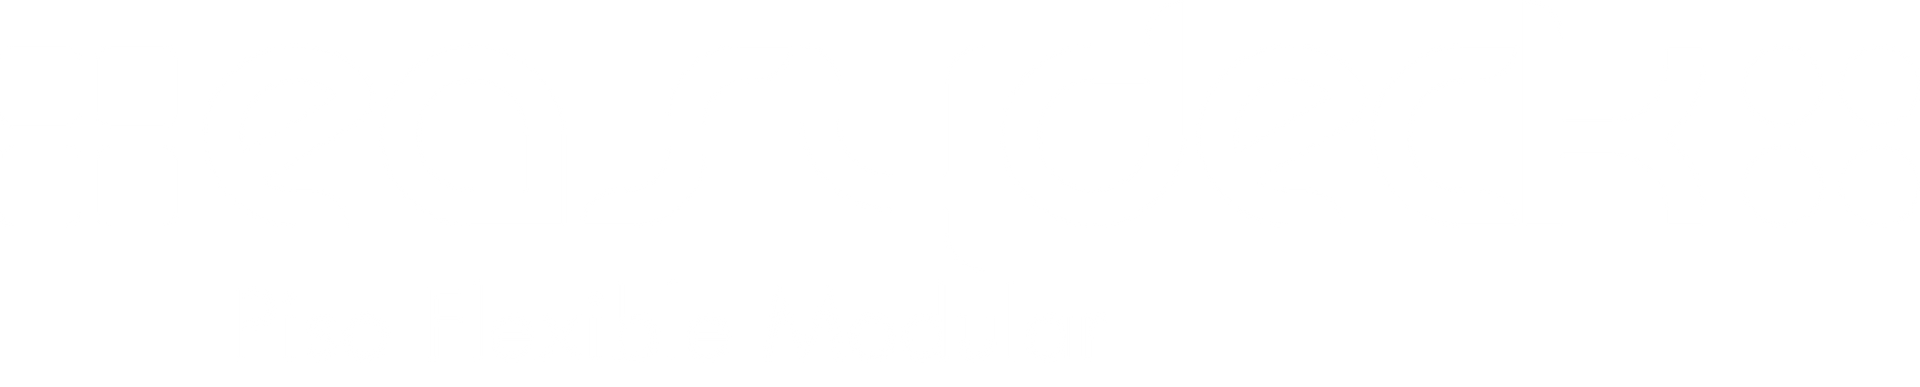 Logo easydeck piso modular 